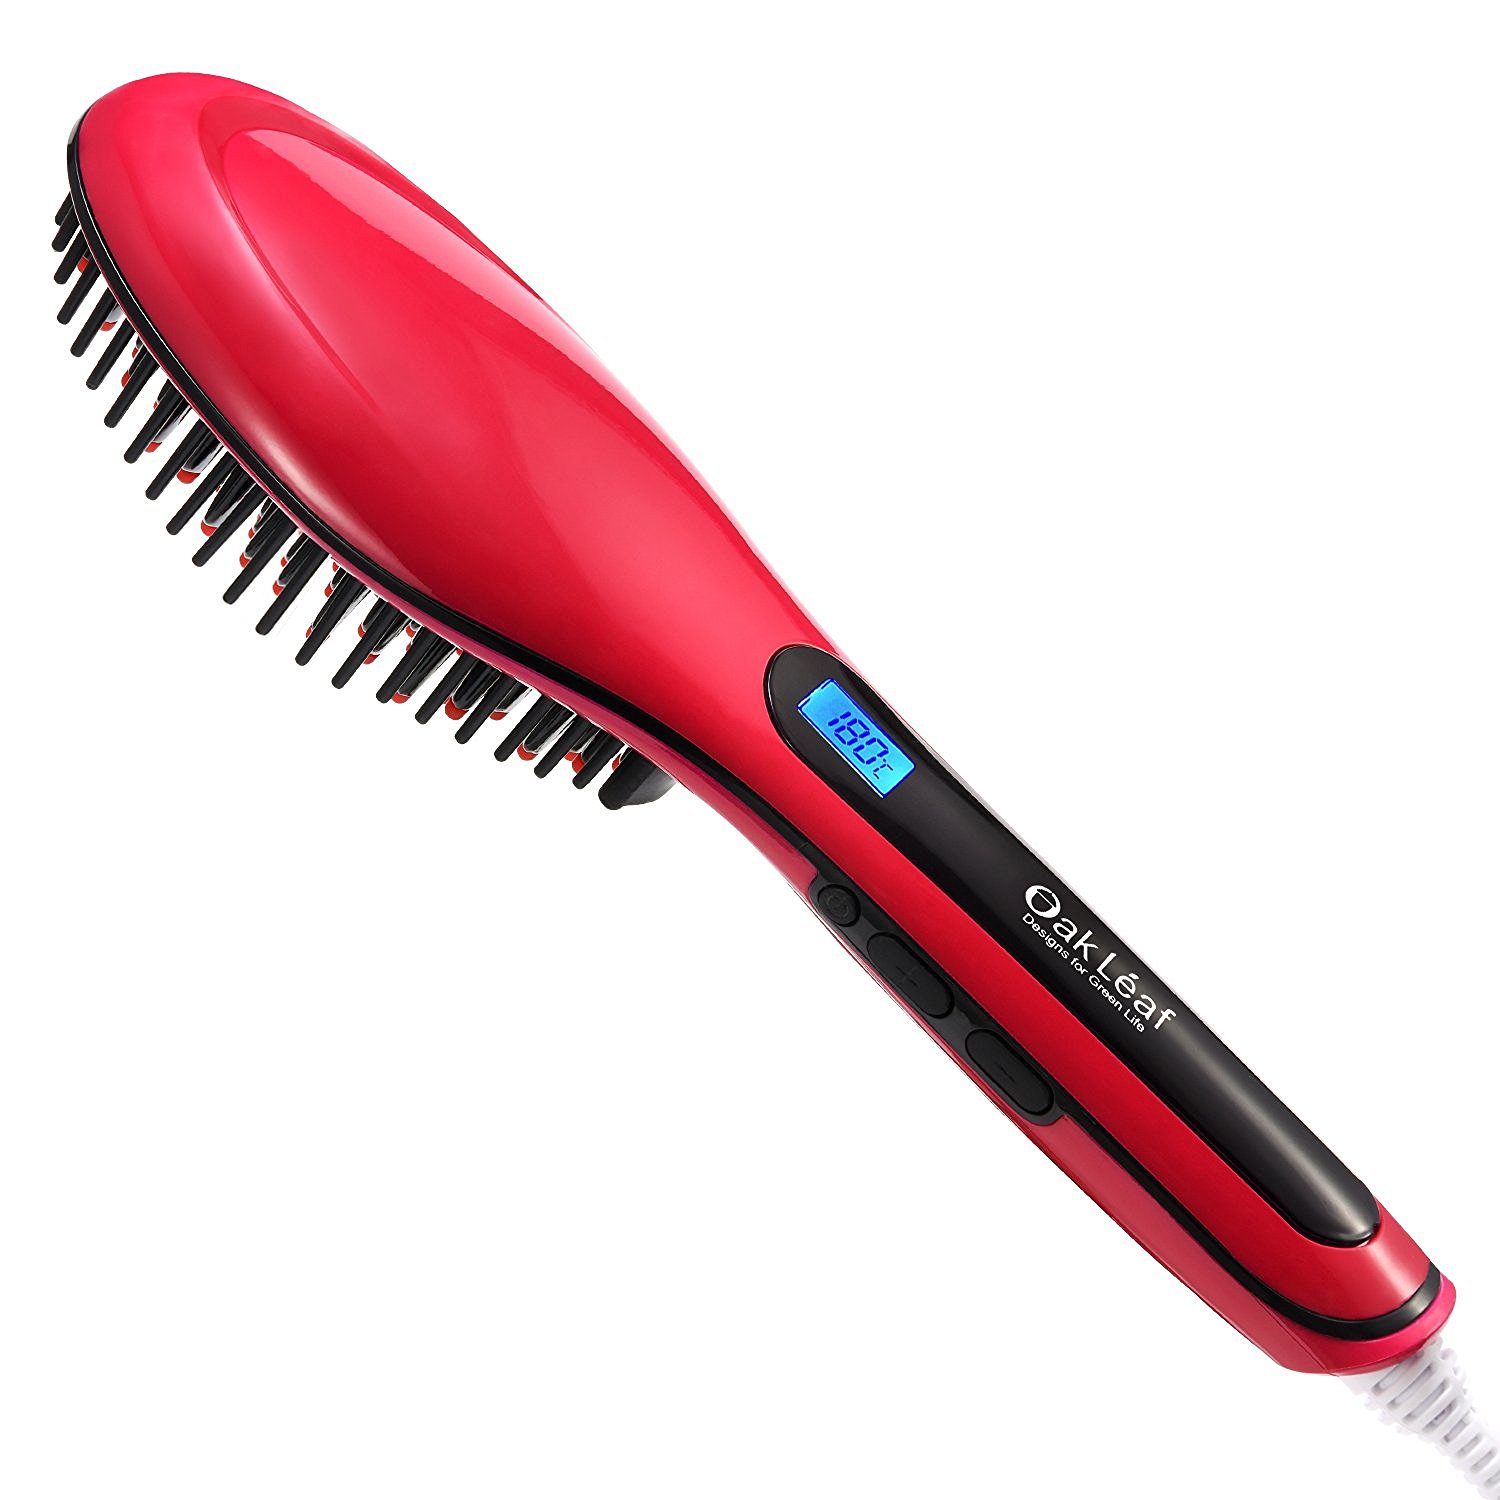 Hair Straightener Brush – Just $16.99!